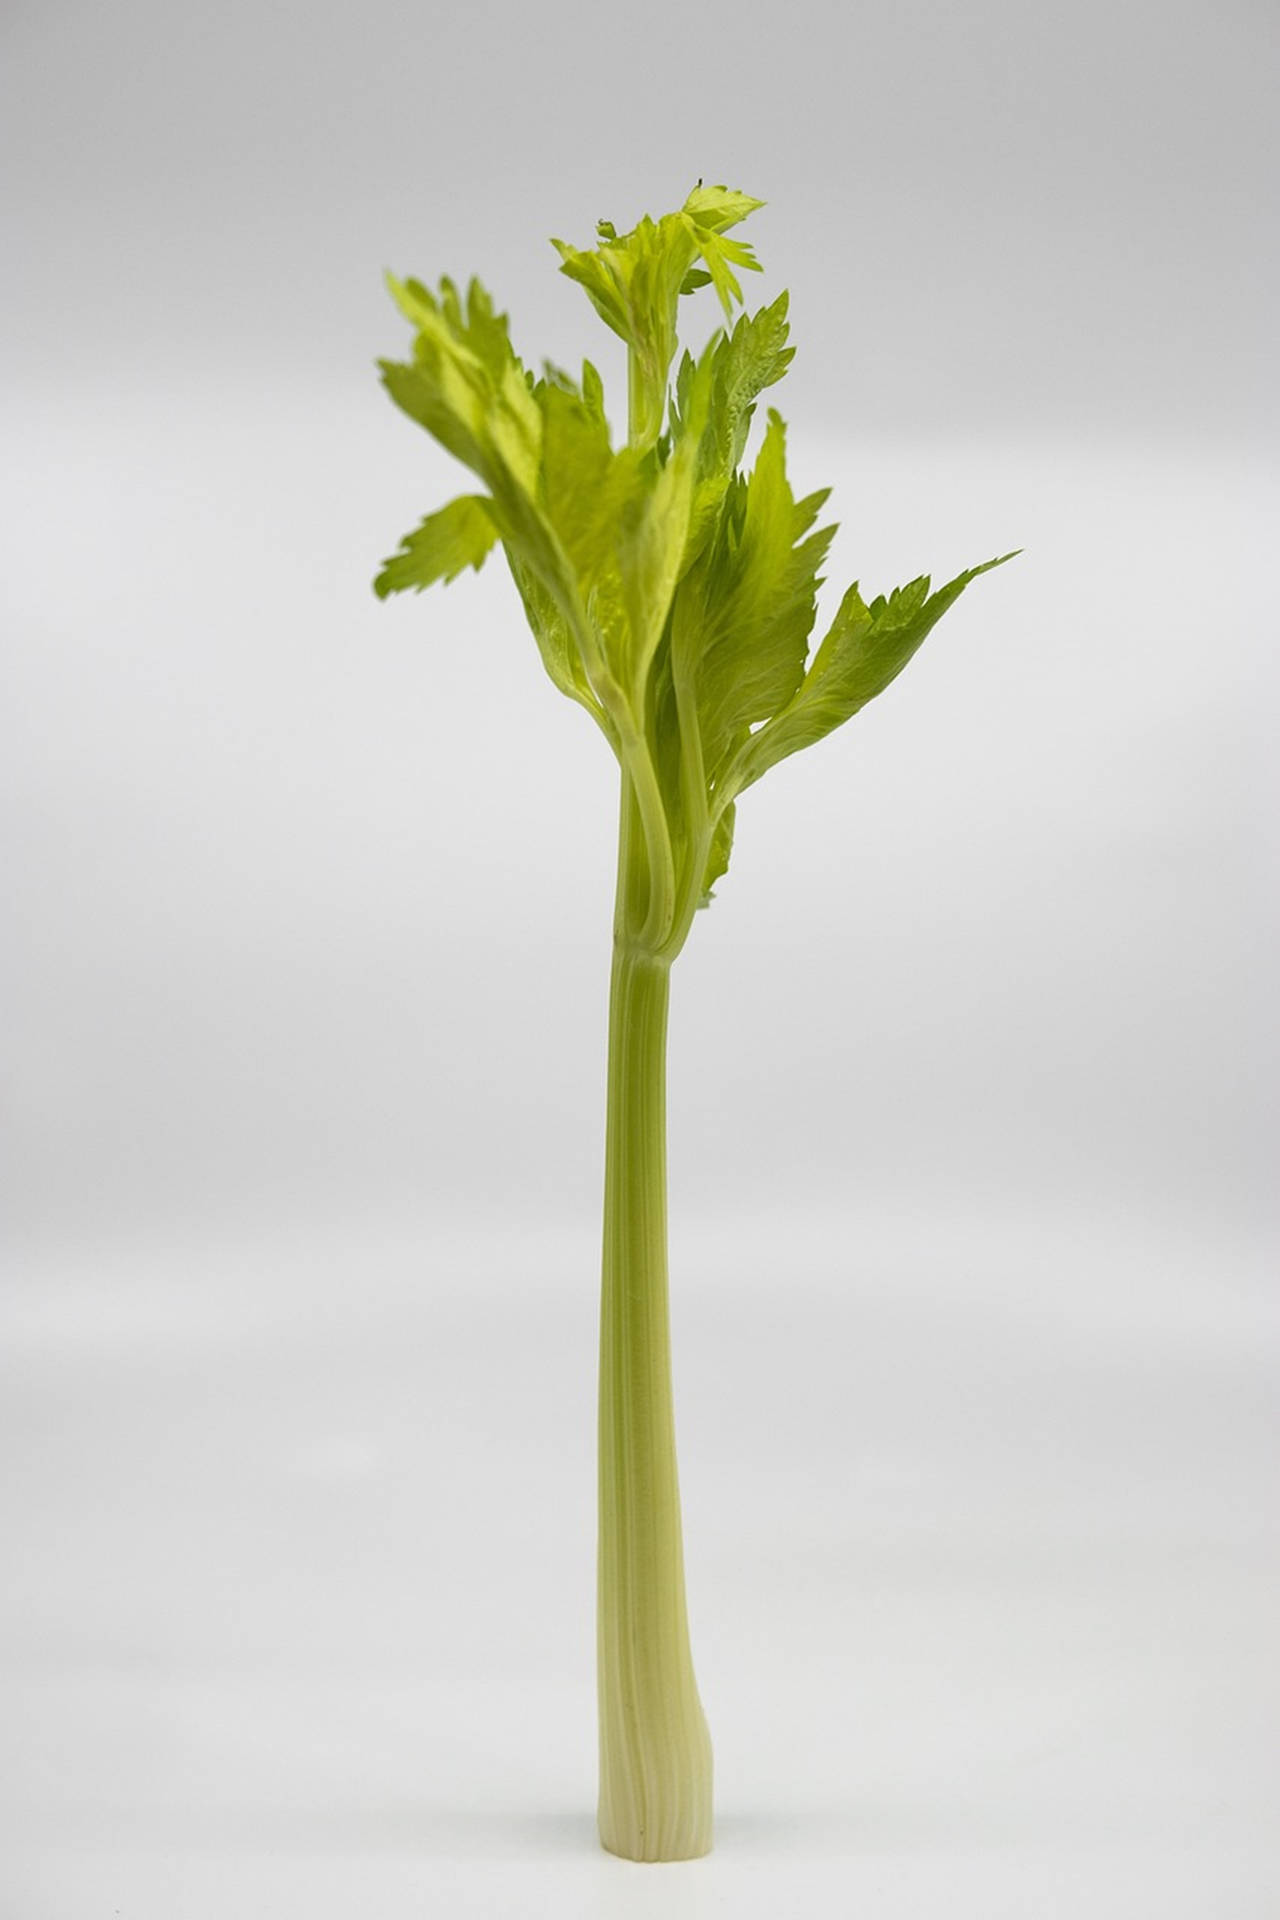 Elegantupright Celery Stalk (elegant Upprätt Selleristjälk) Kan Vara En Fantastisk Design För Din Dator- Eller Mobiltelefon Tapet. Med Dess Slanka Design Och Grönfärgade Nyanser Kan Det Ge En Avslappnad Och Förfinad Känsla Till Din Enhet. Wallpaper